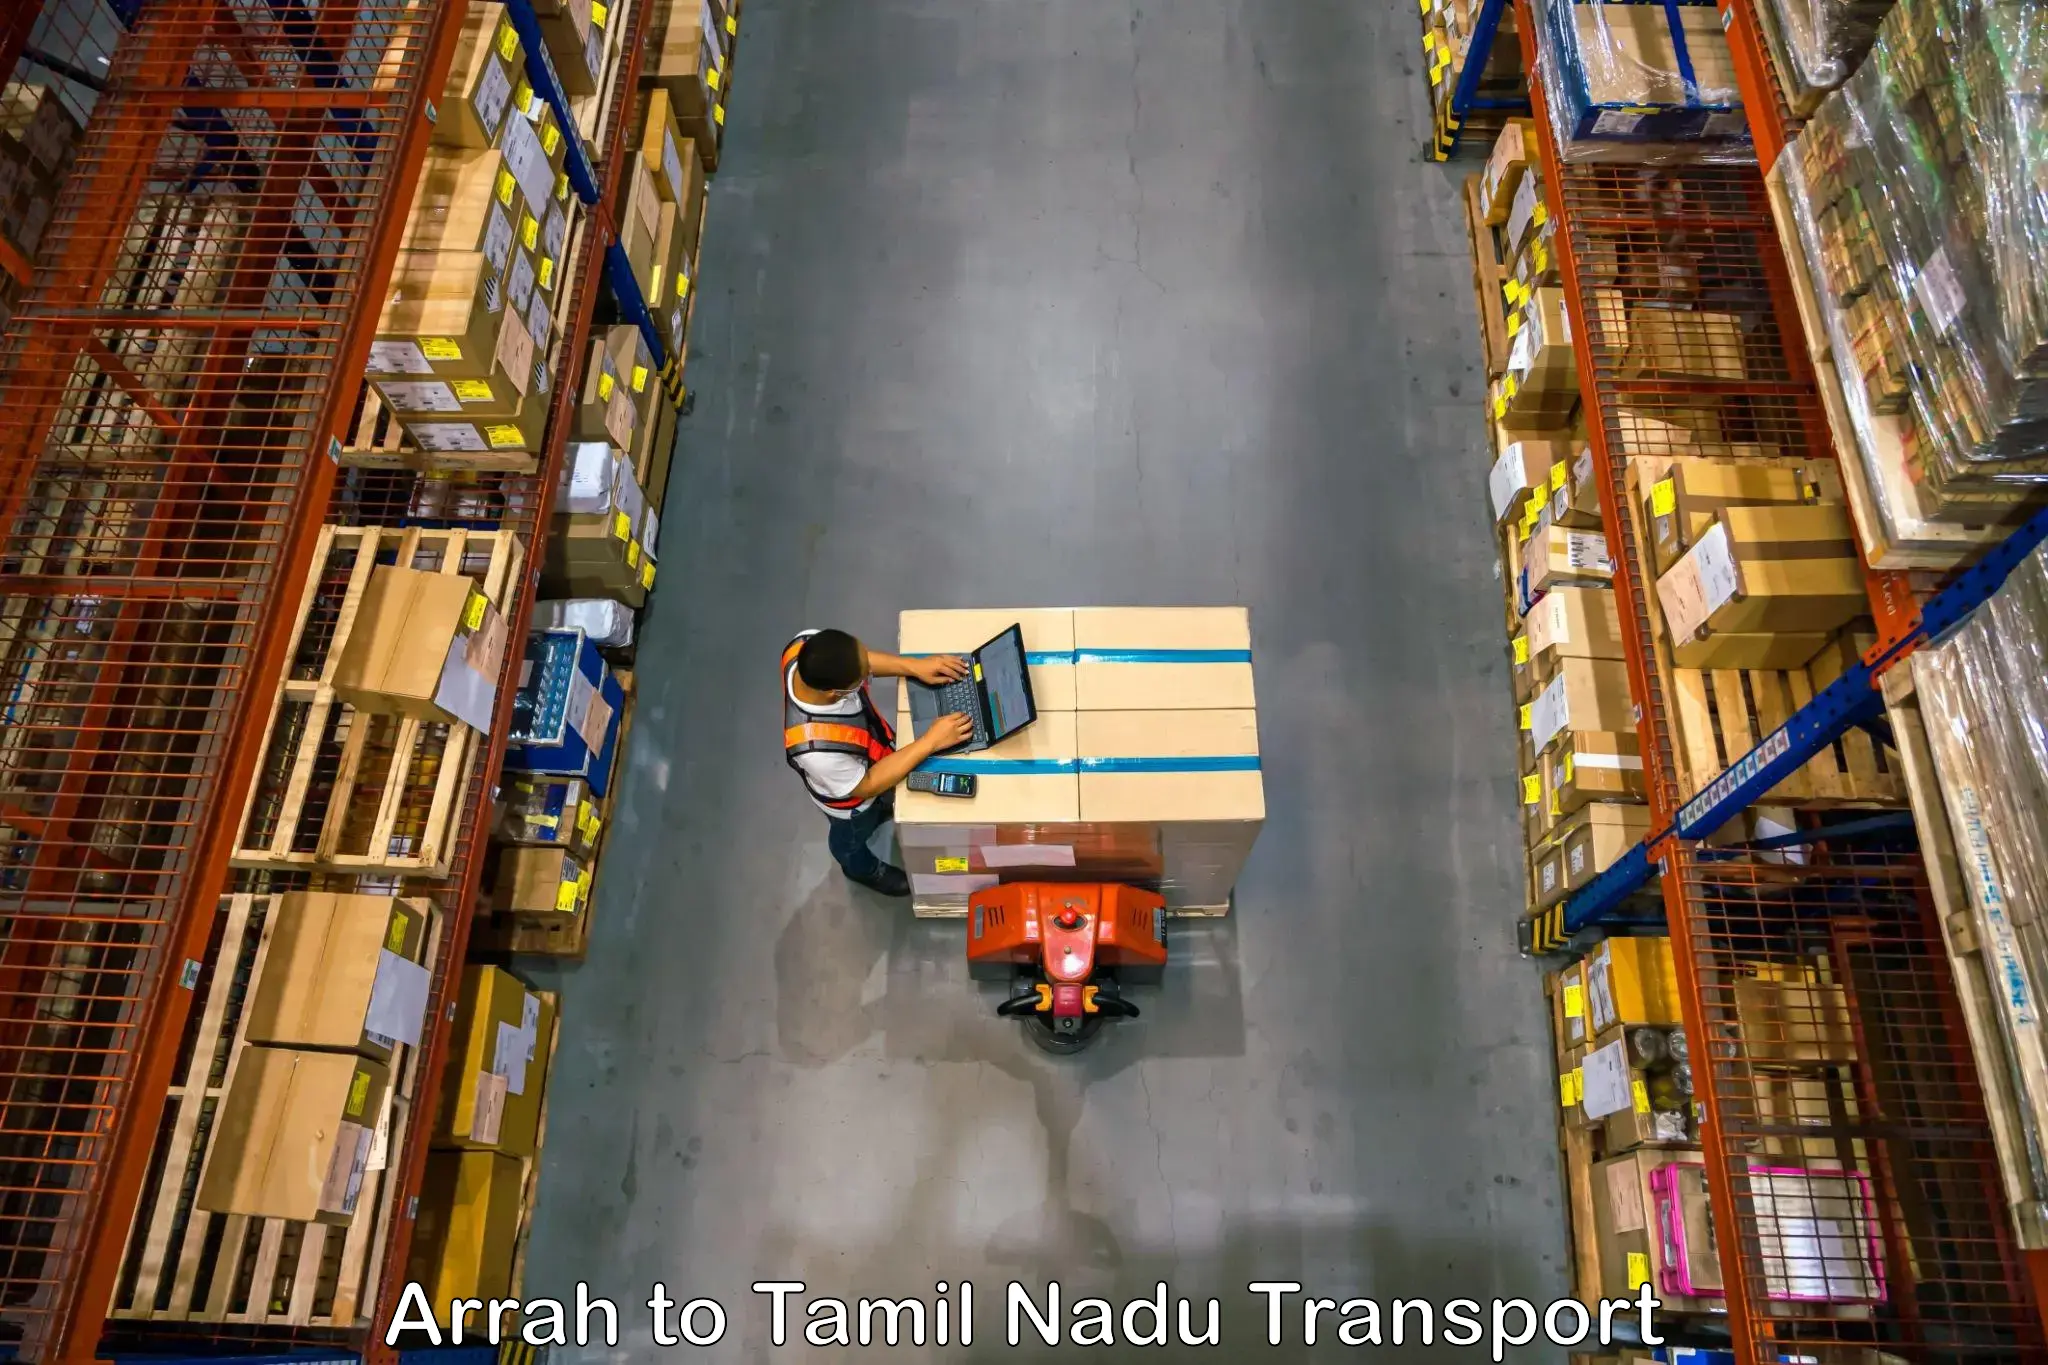 Nearby transport service Arrah to Perundurai